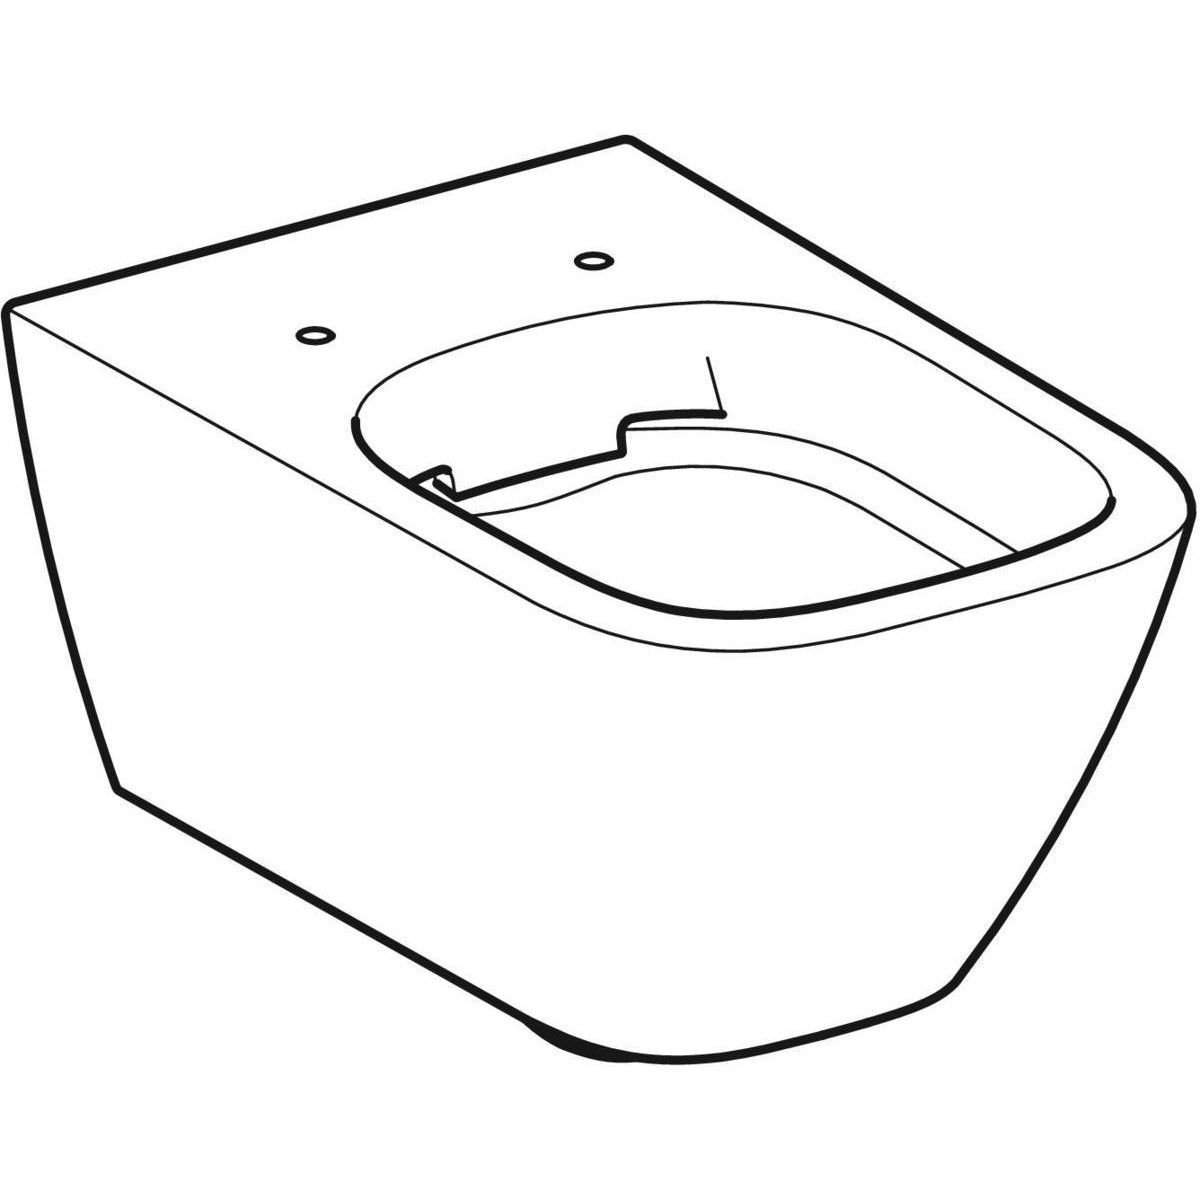 KOGEGESSD35W Geberit Smyle Square WC školjka s podometnim splakovalnikom Geberit Duofix 458.103.00.1 Delta35